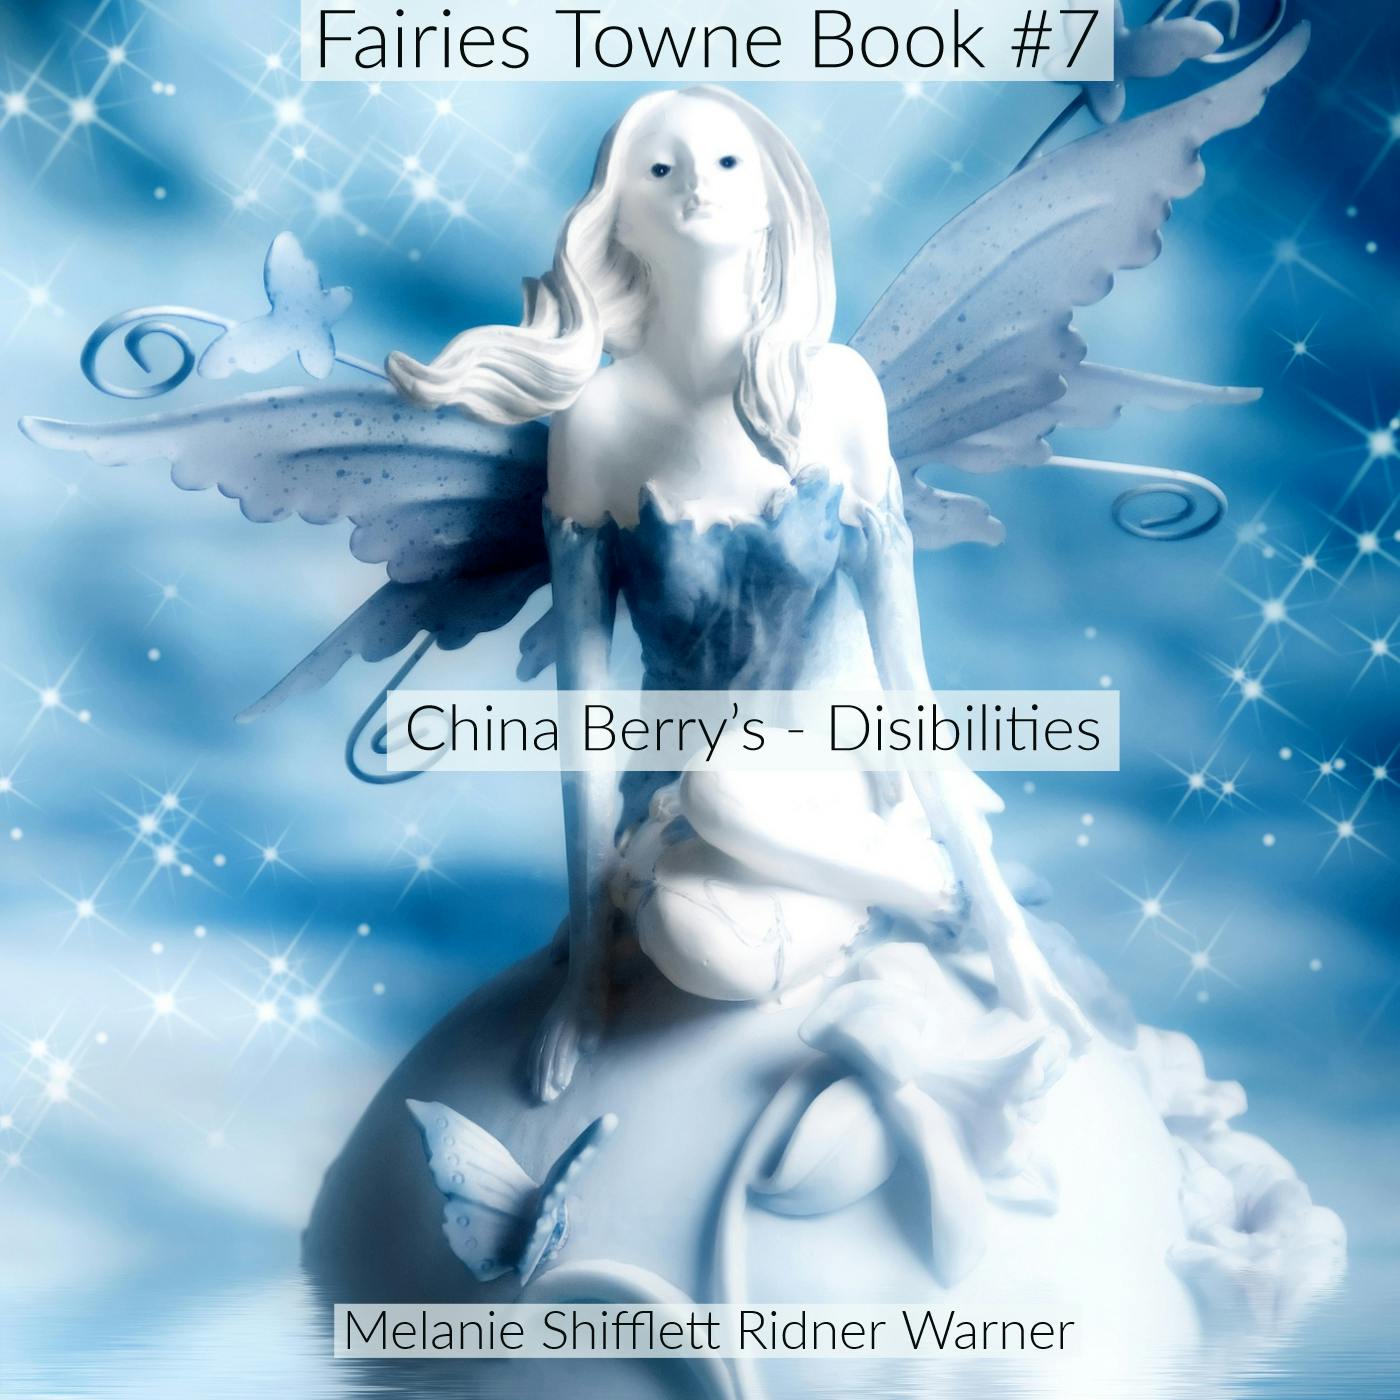 China Berry Fairies: Disabilities - Melanie Shifflett Ridner Warner